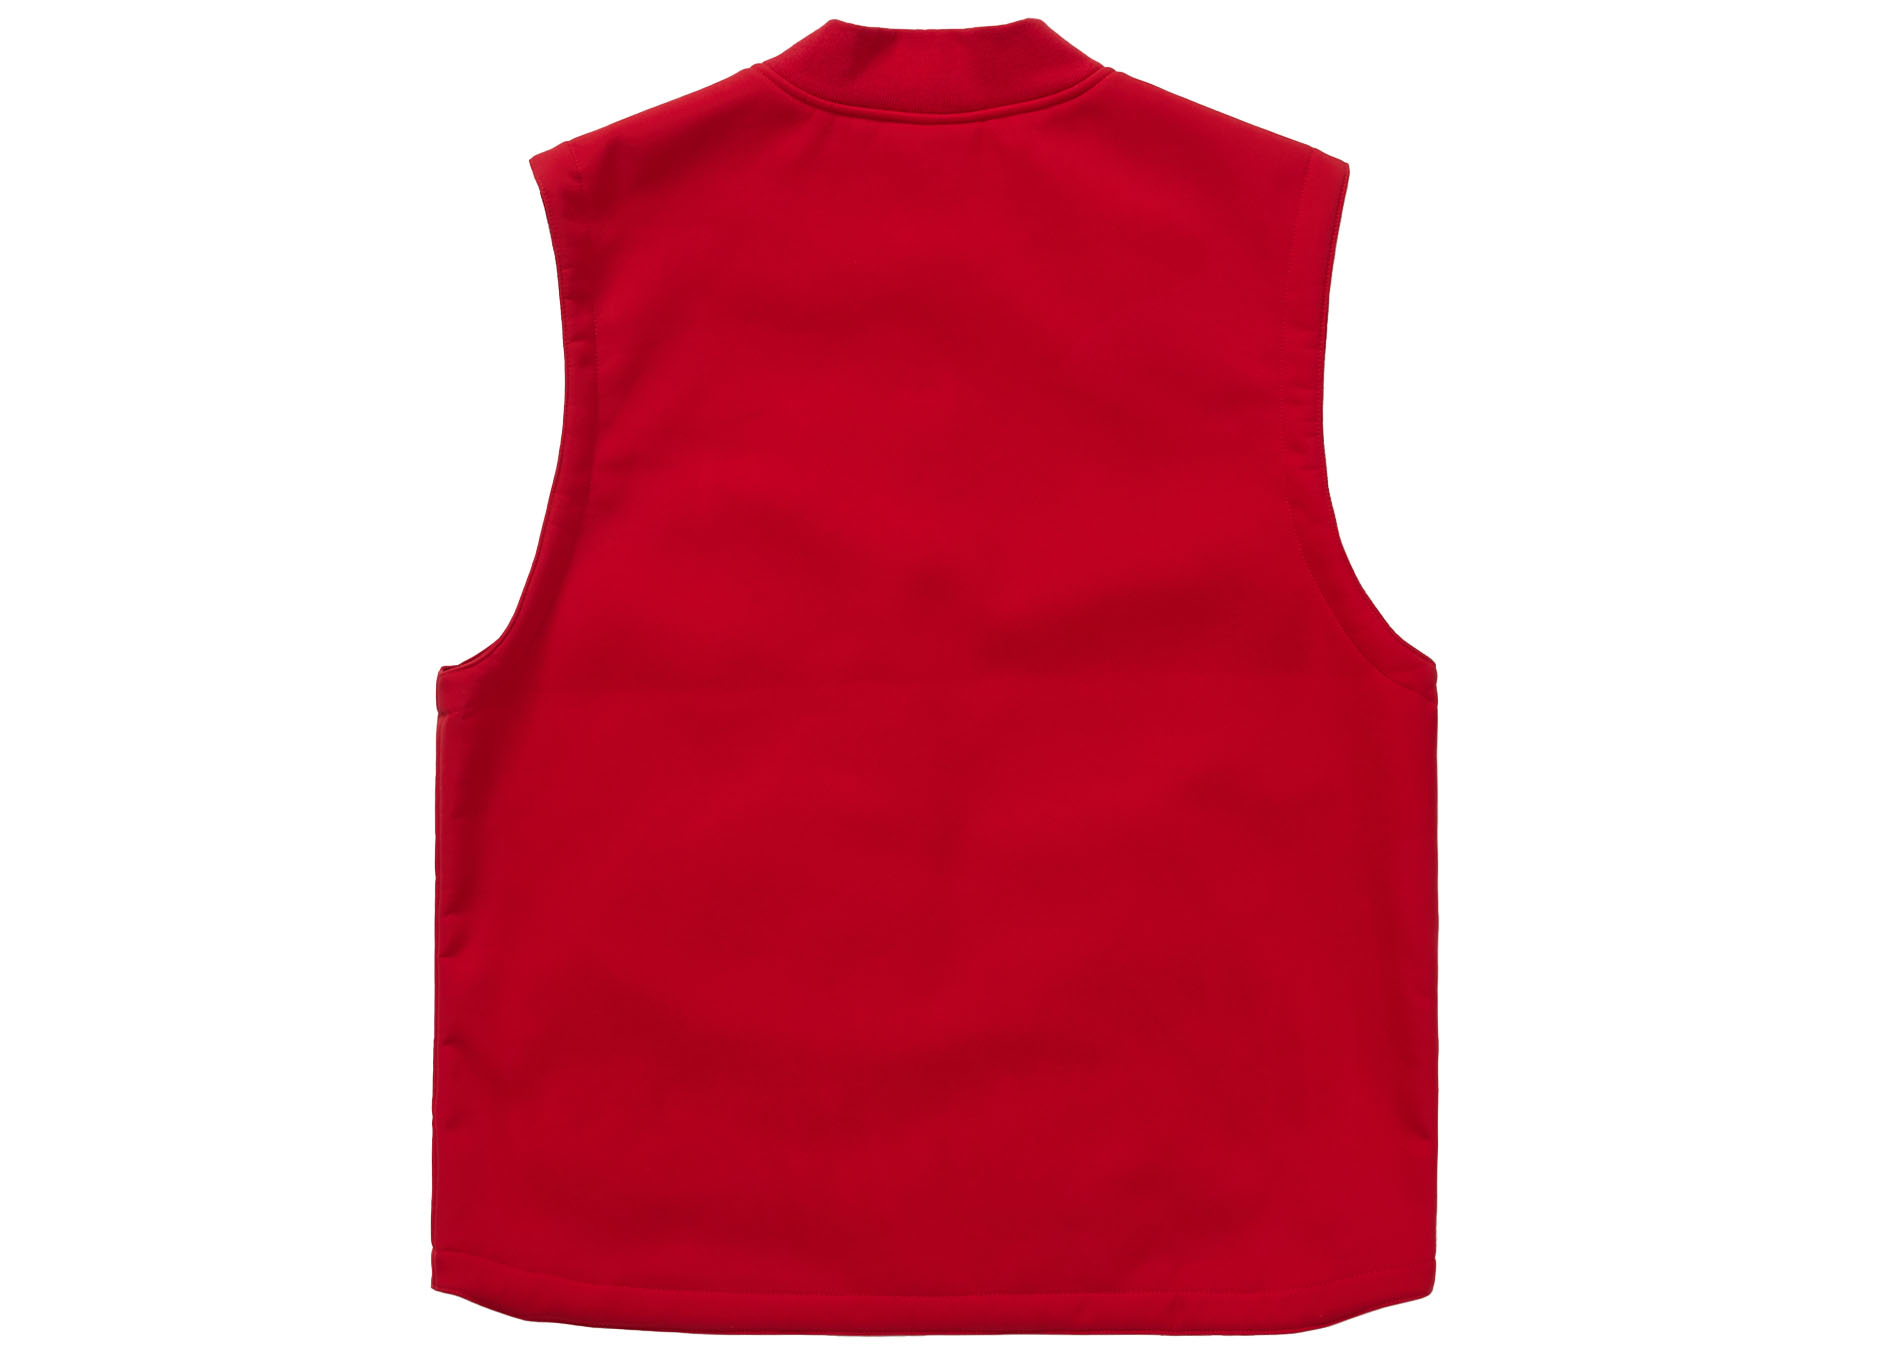 Supreme WINDSTOPPER Work Vest Red